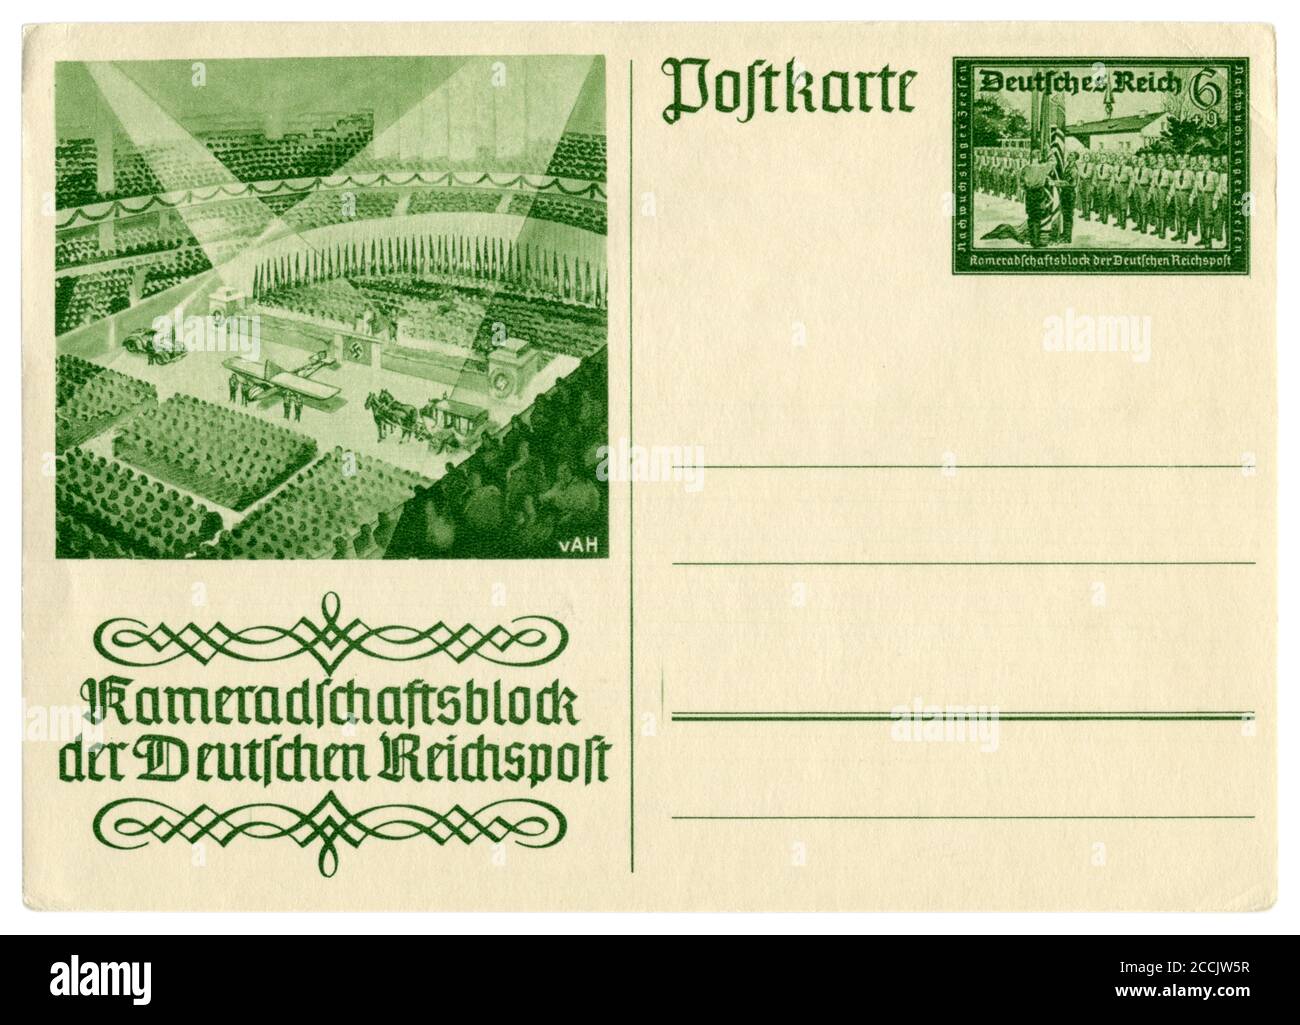 Carte postale historique allemande : bloc de camaraderie du Reichspast allemand, Réunion des employés des services postaux dans le hall d'exposition de Berlin, 1939 Banque D'Images